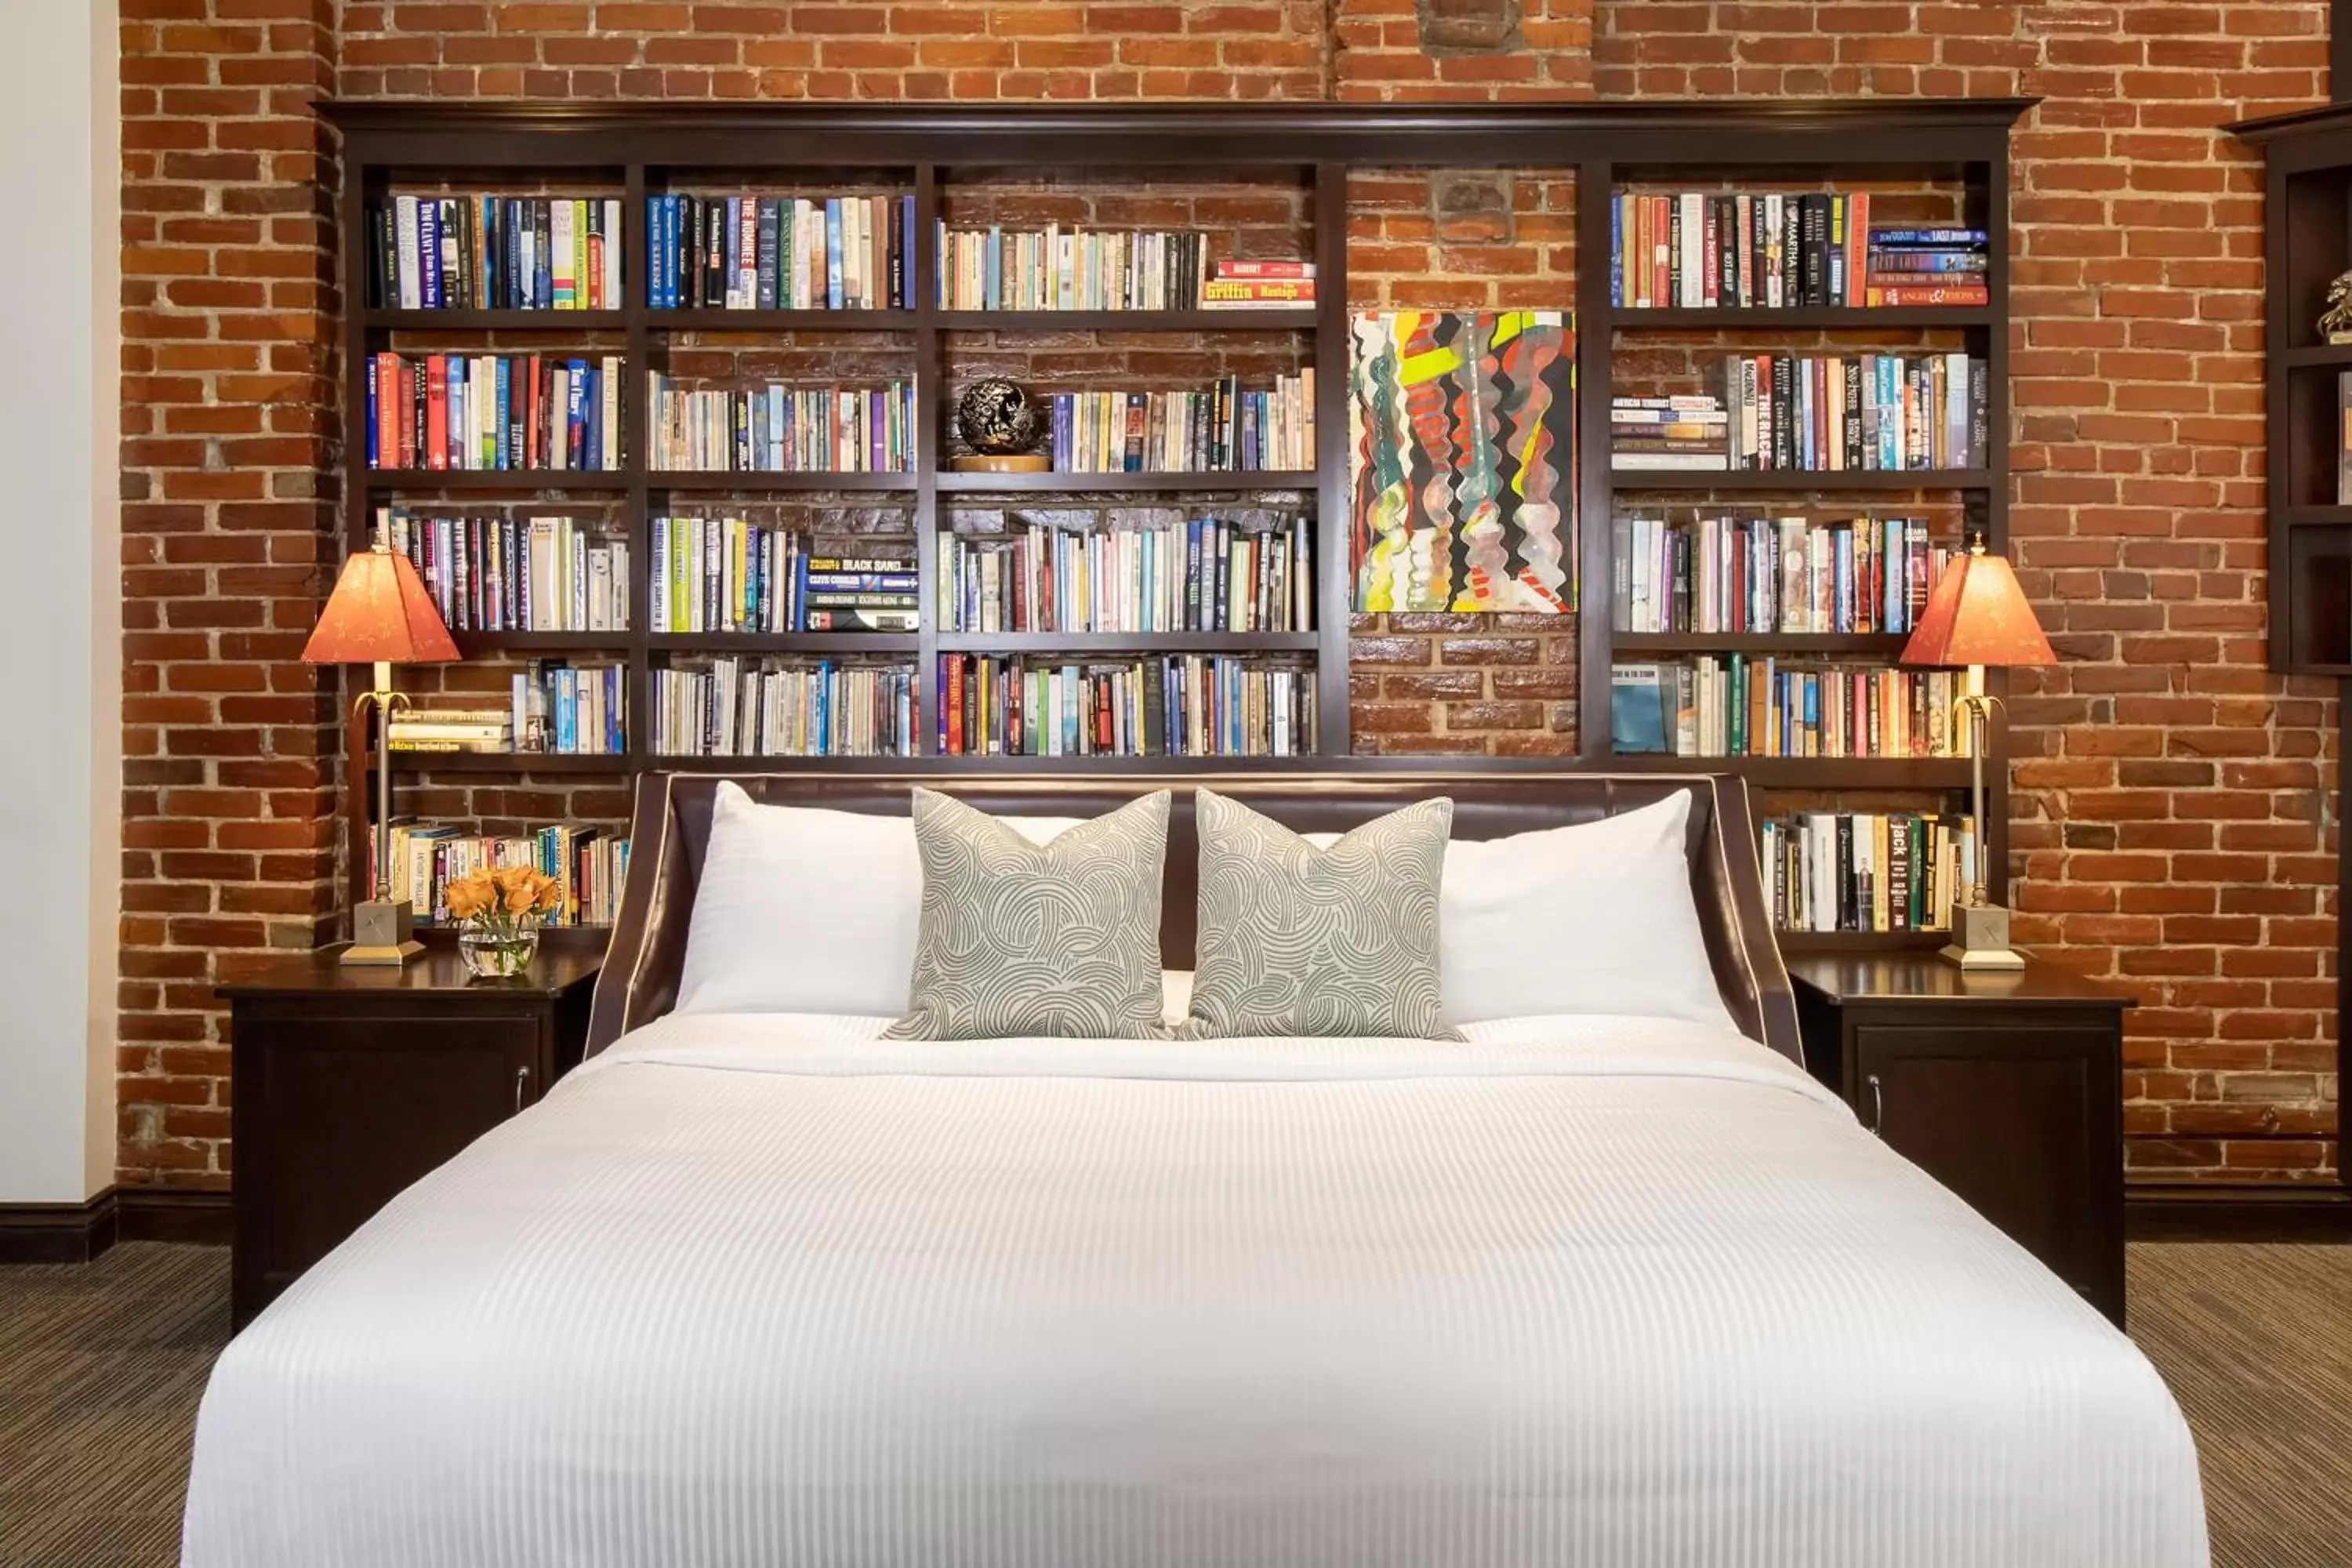 Bedroom, Library in Retro Suites Hotel